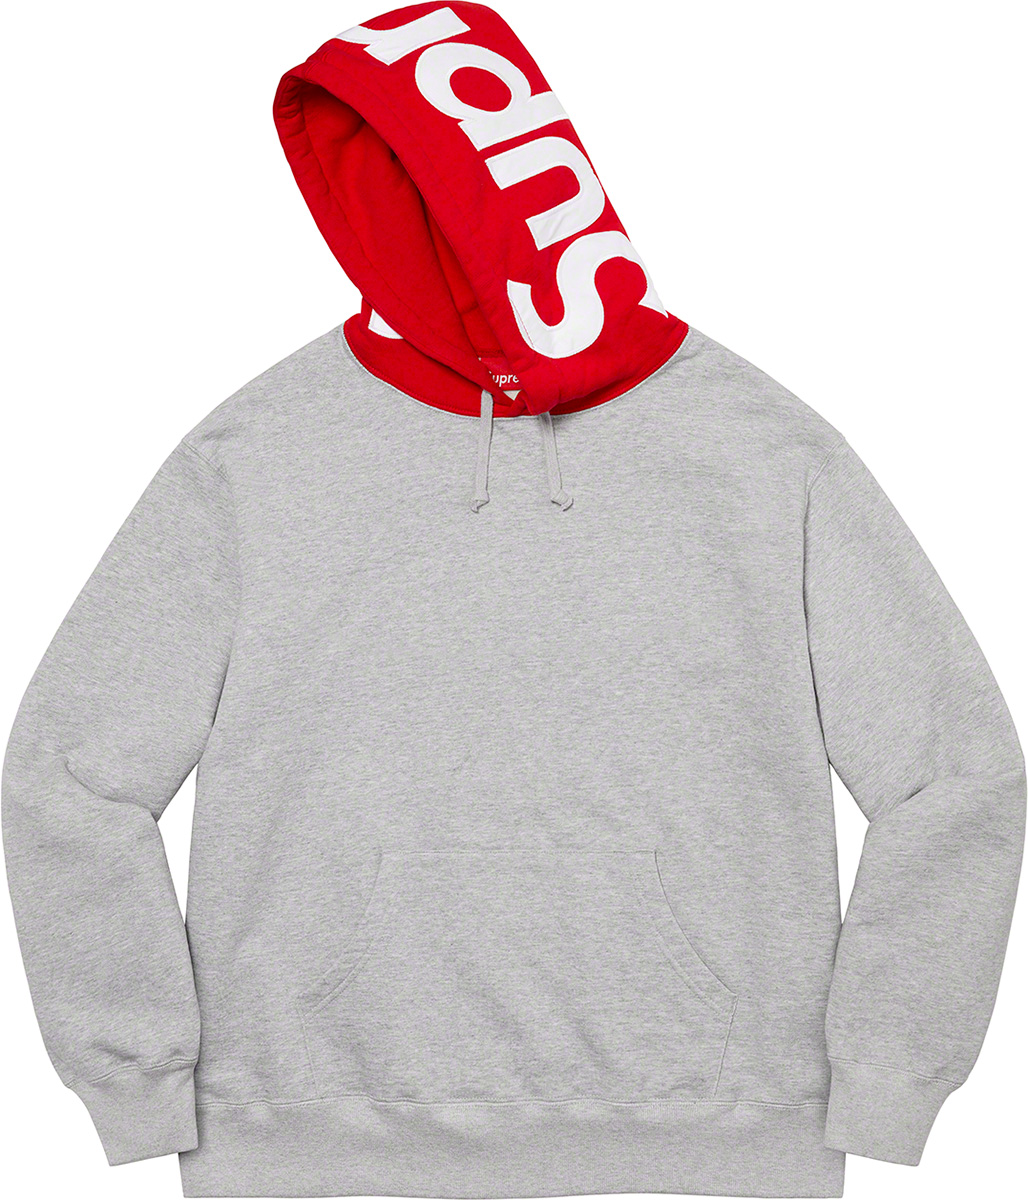 XL supreme Contrast Hooded Sweatshirt